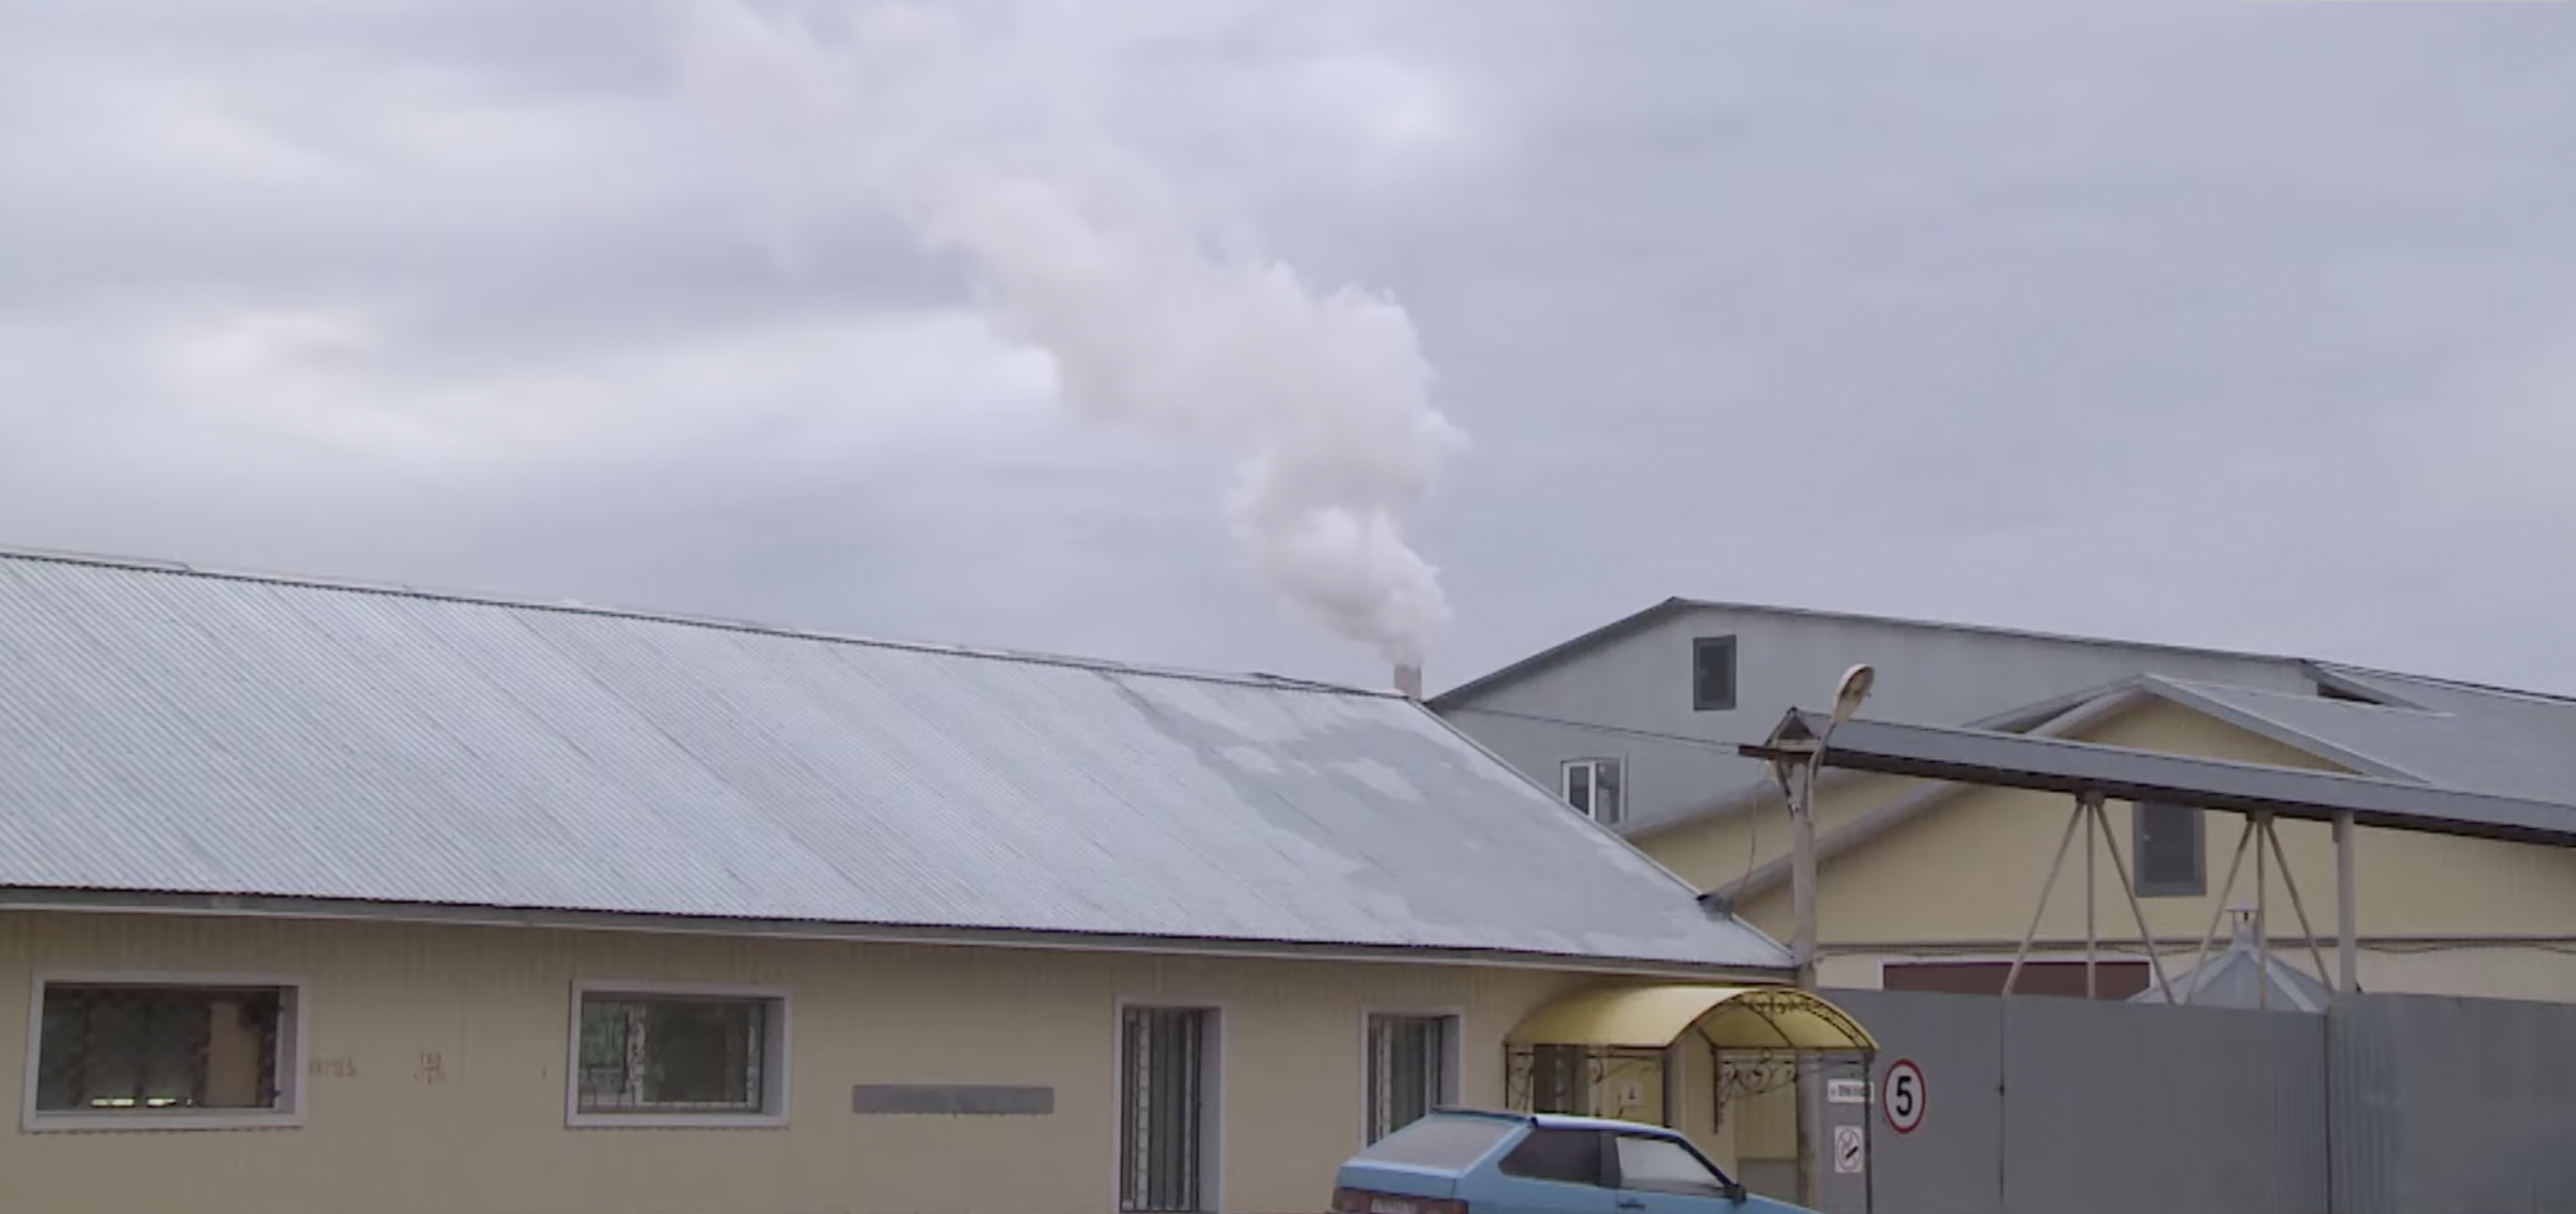 Жители микрорайона Интеграл в Йошкар-Оле жалуются на загрязнение воздуха